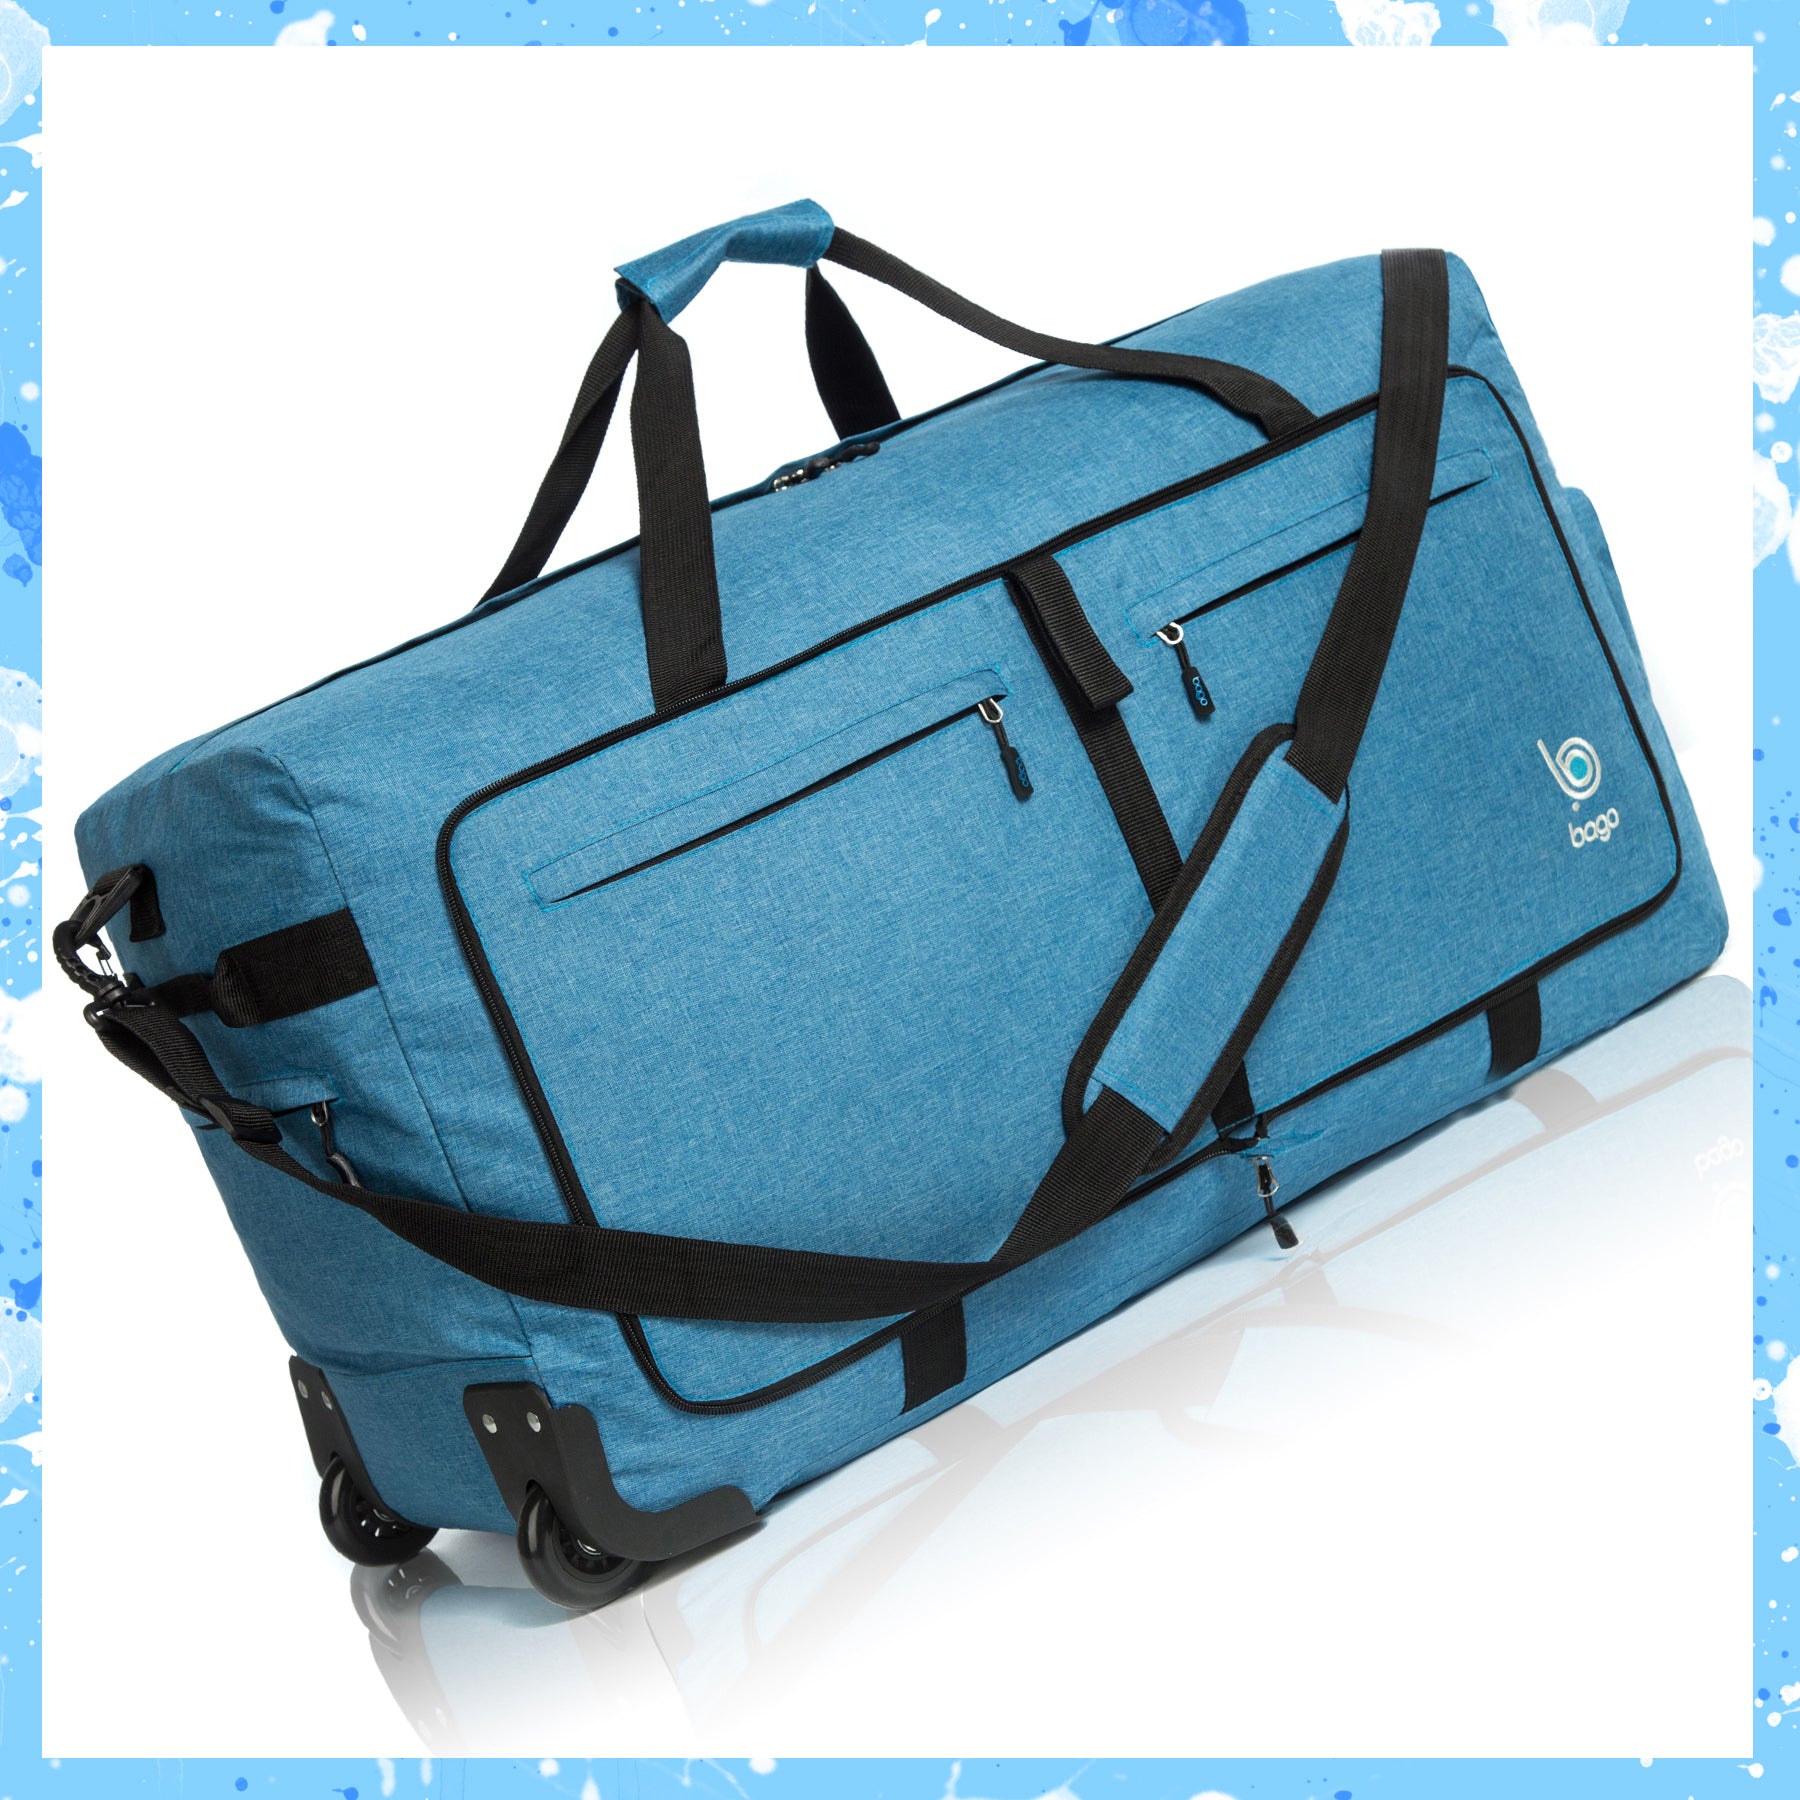 The Bago Endurance Duffle Backpack